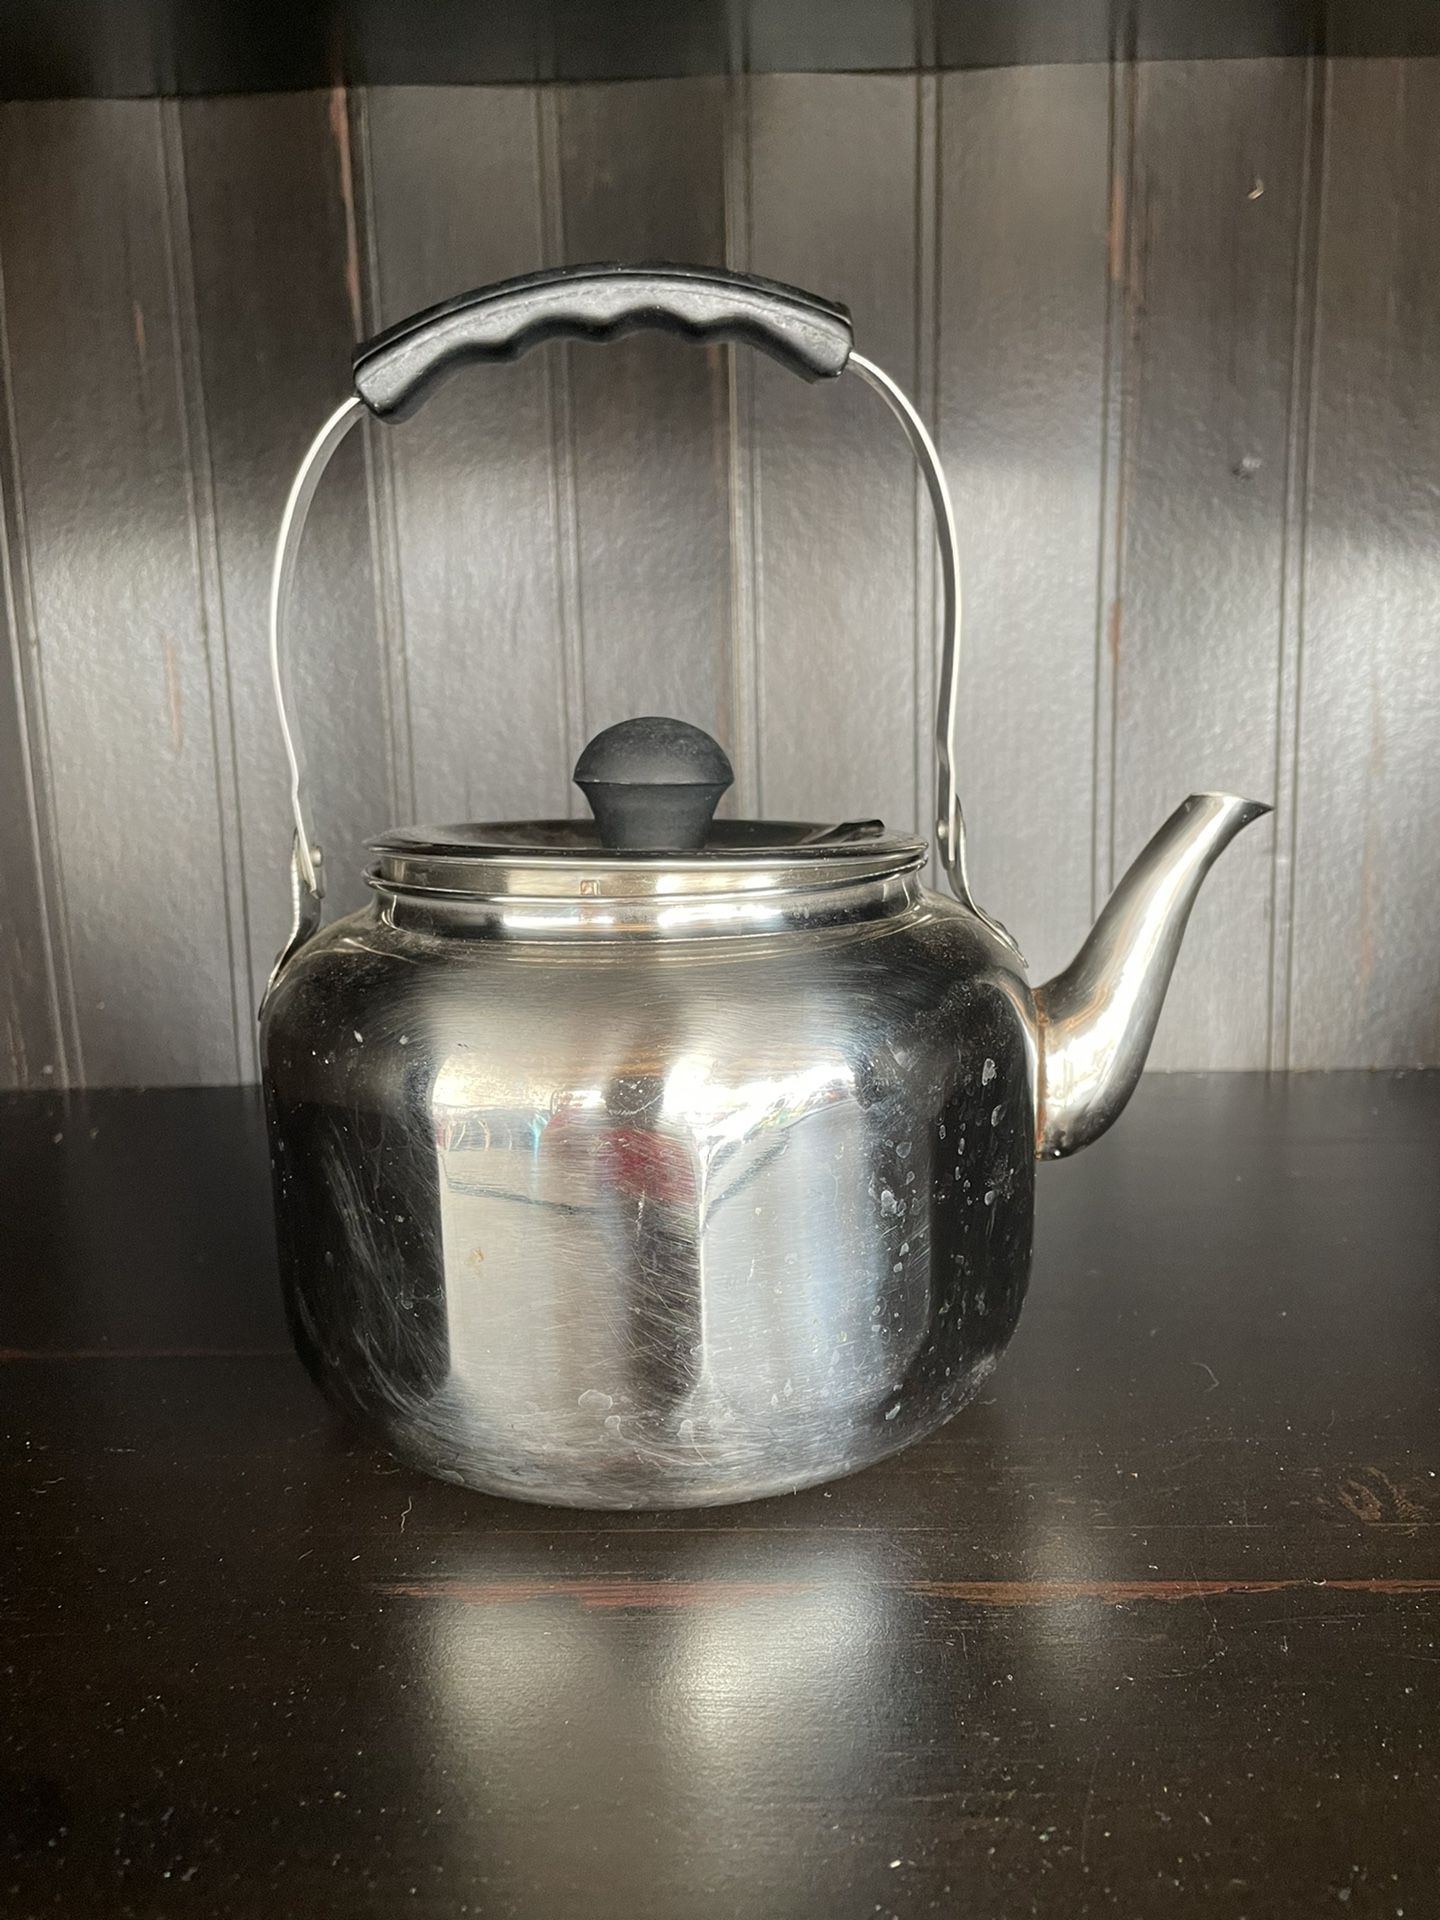 Vintage Farberware Tea Pot